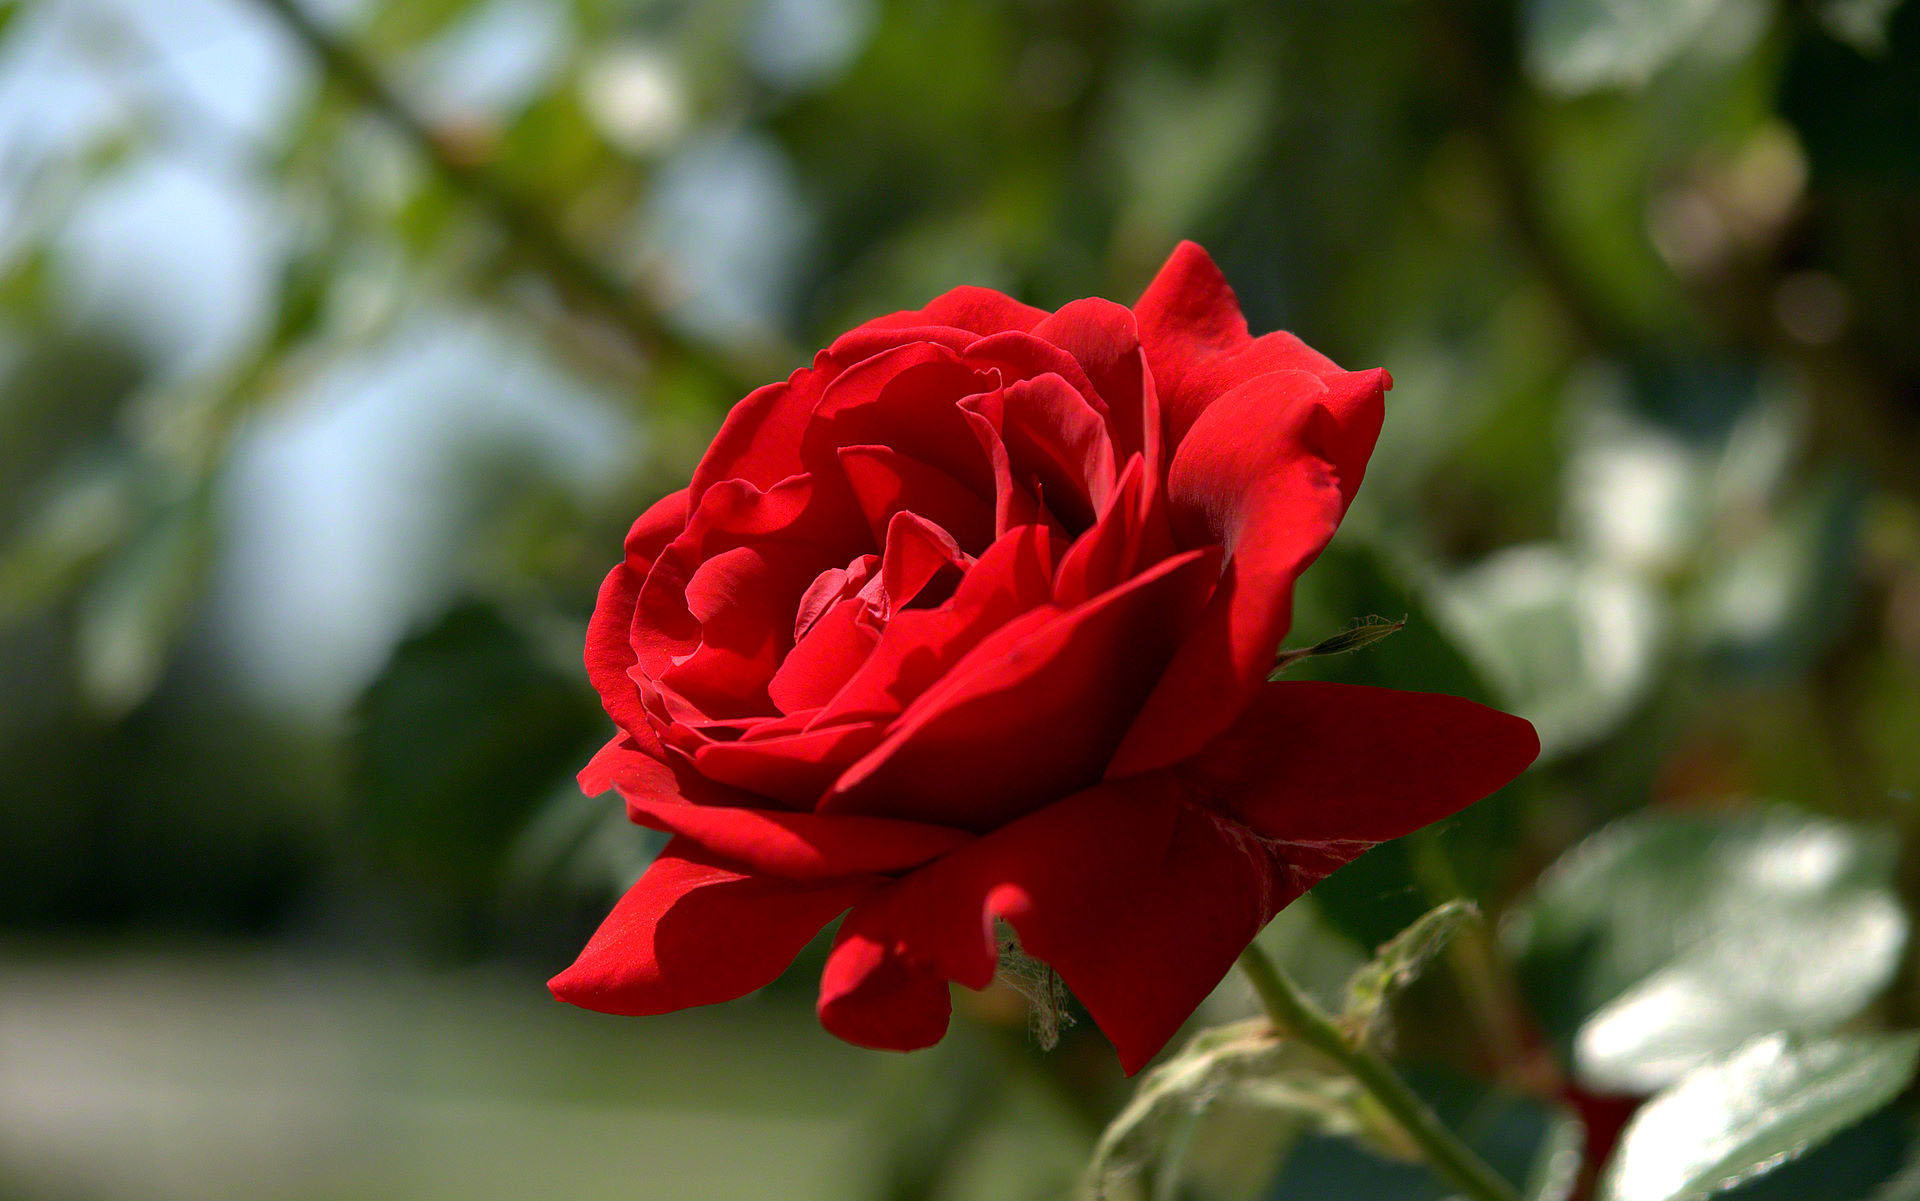 rote rosentapete,blume,blühende pflanze,gartenrosen,blütenblatt,rose